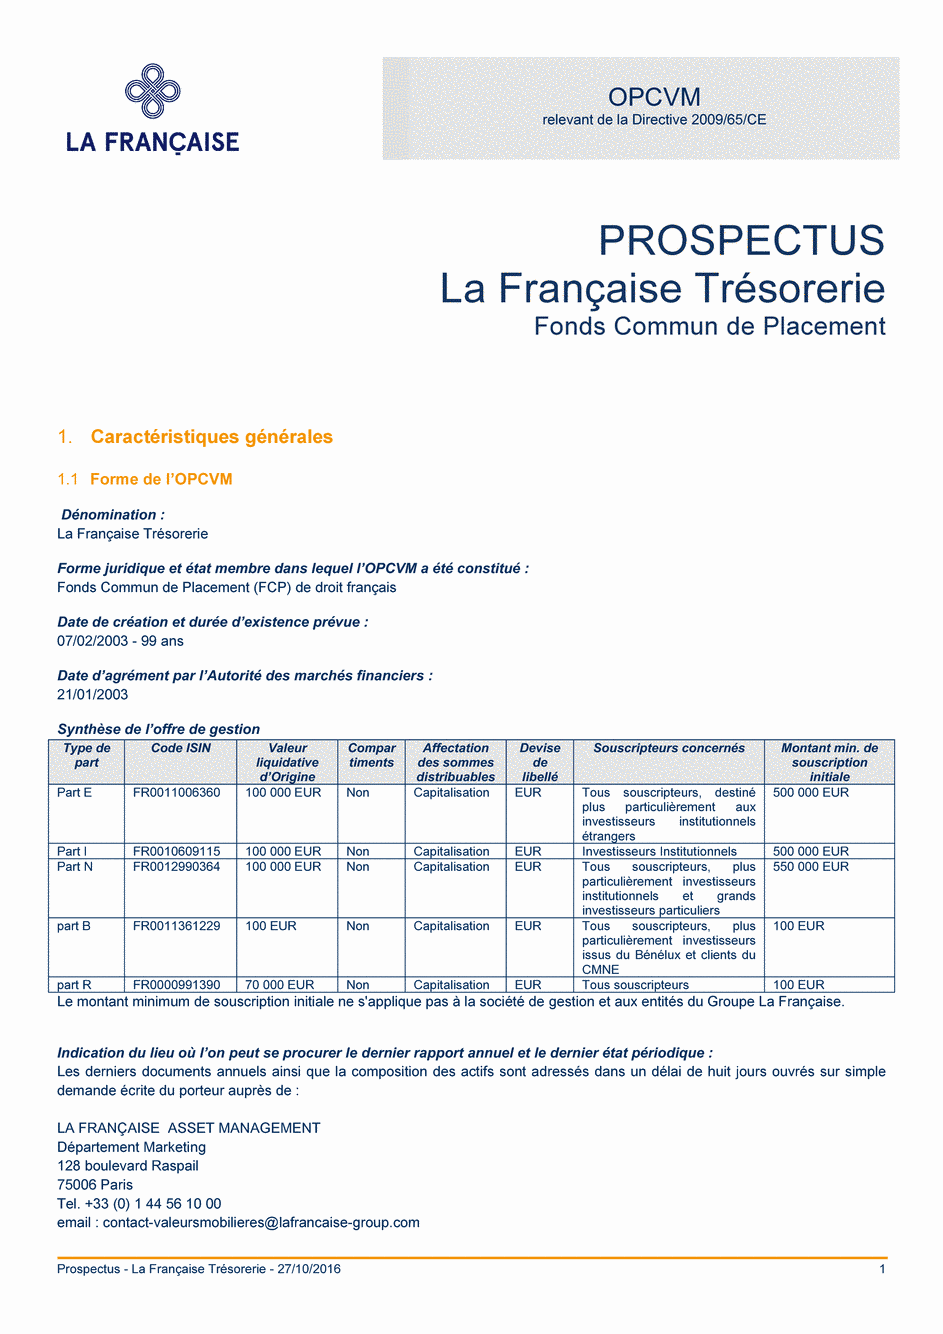 Prospectus La Française Trésorerie - Part R - 27/10/2016 - Français